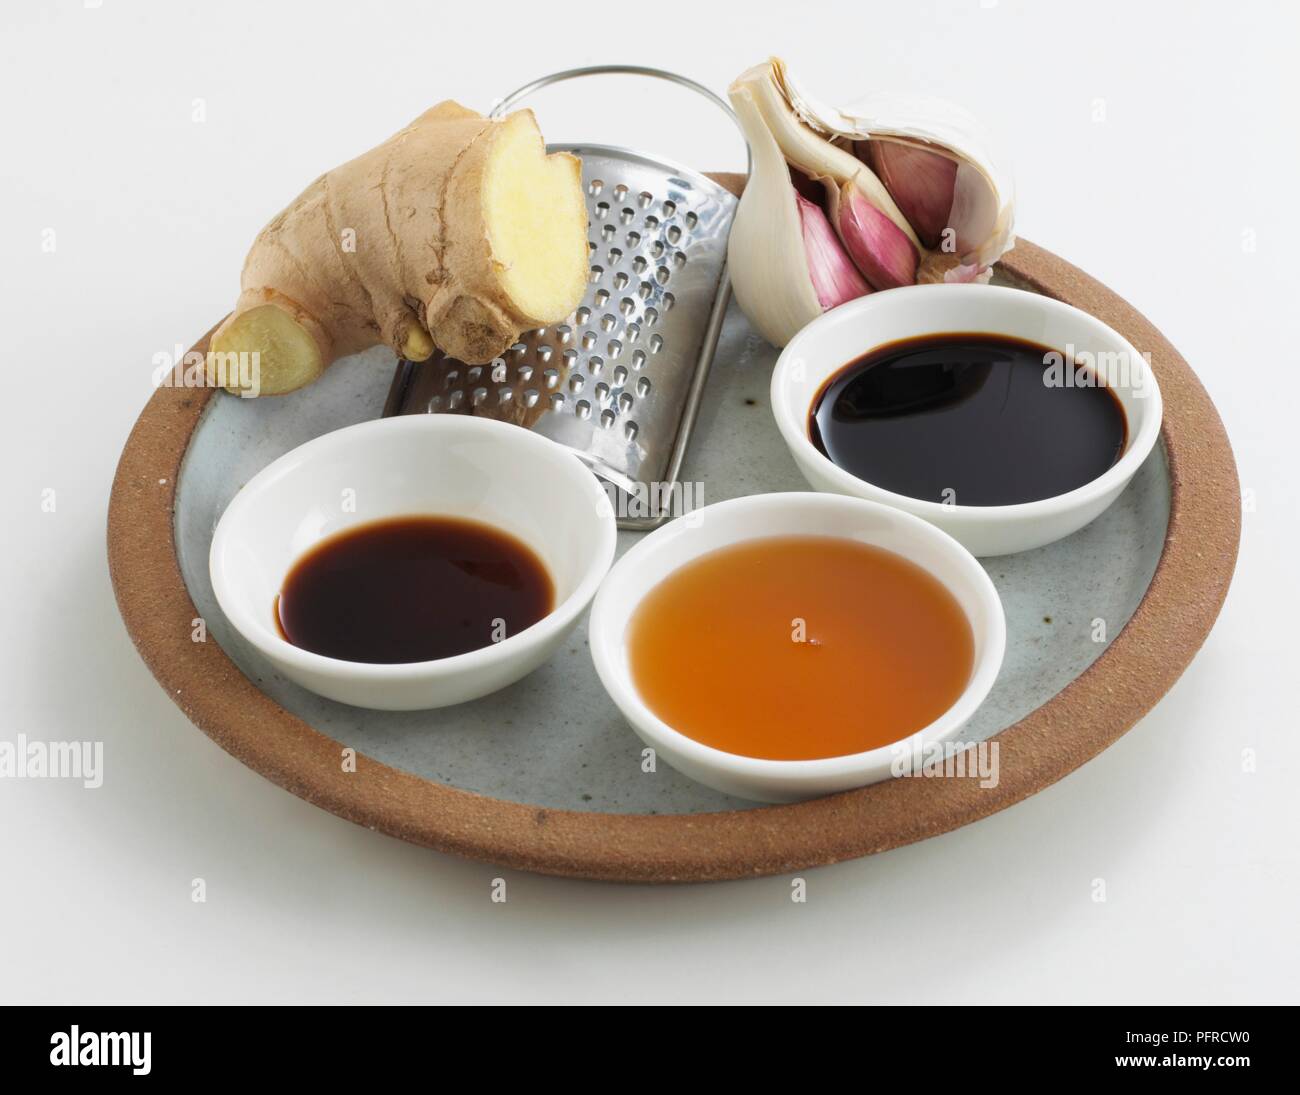 Knoblauch, Ingwer, eine Reibe, und Schüsseln mit Balsamico, Honig und Sojasauce auf einer Platte angeordnet Stockfoto